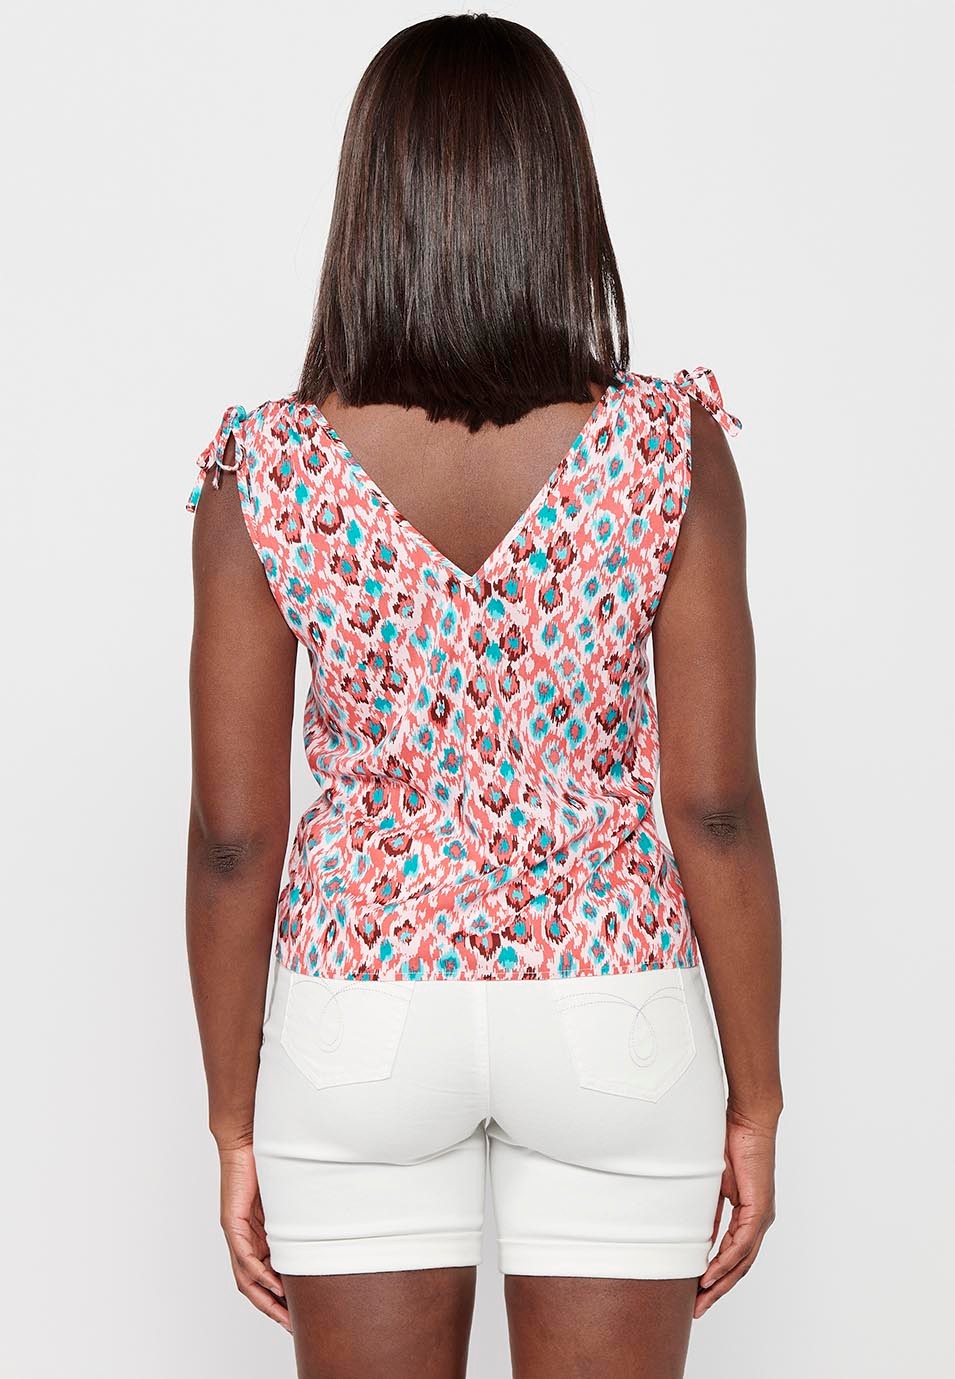 Damen-Bluse mit mehrfarbigem geometrischem Aufdruck, V-Ausschnitt und Kordelzug am Rücken, faltig, breite Träger 5